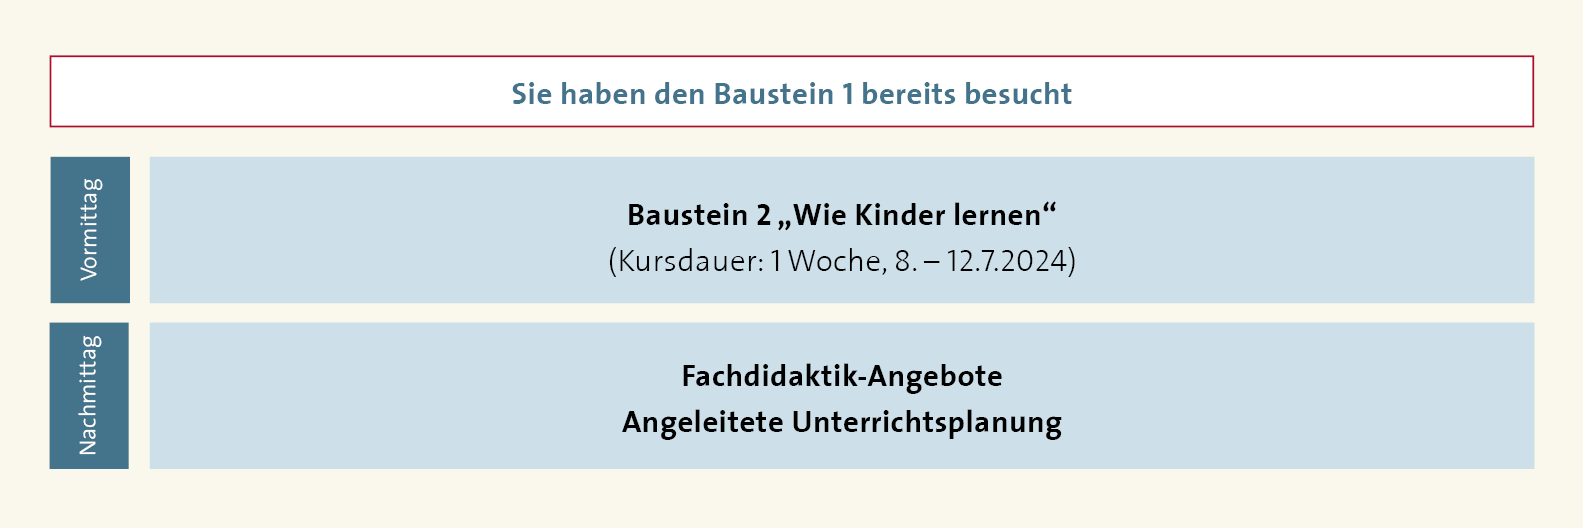 Baustein 2